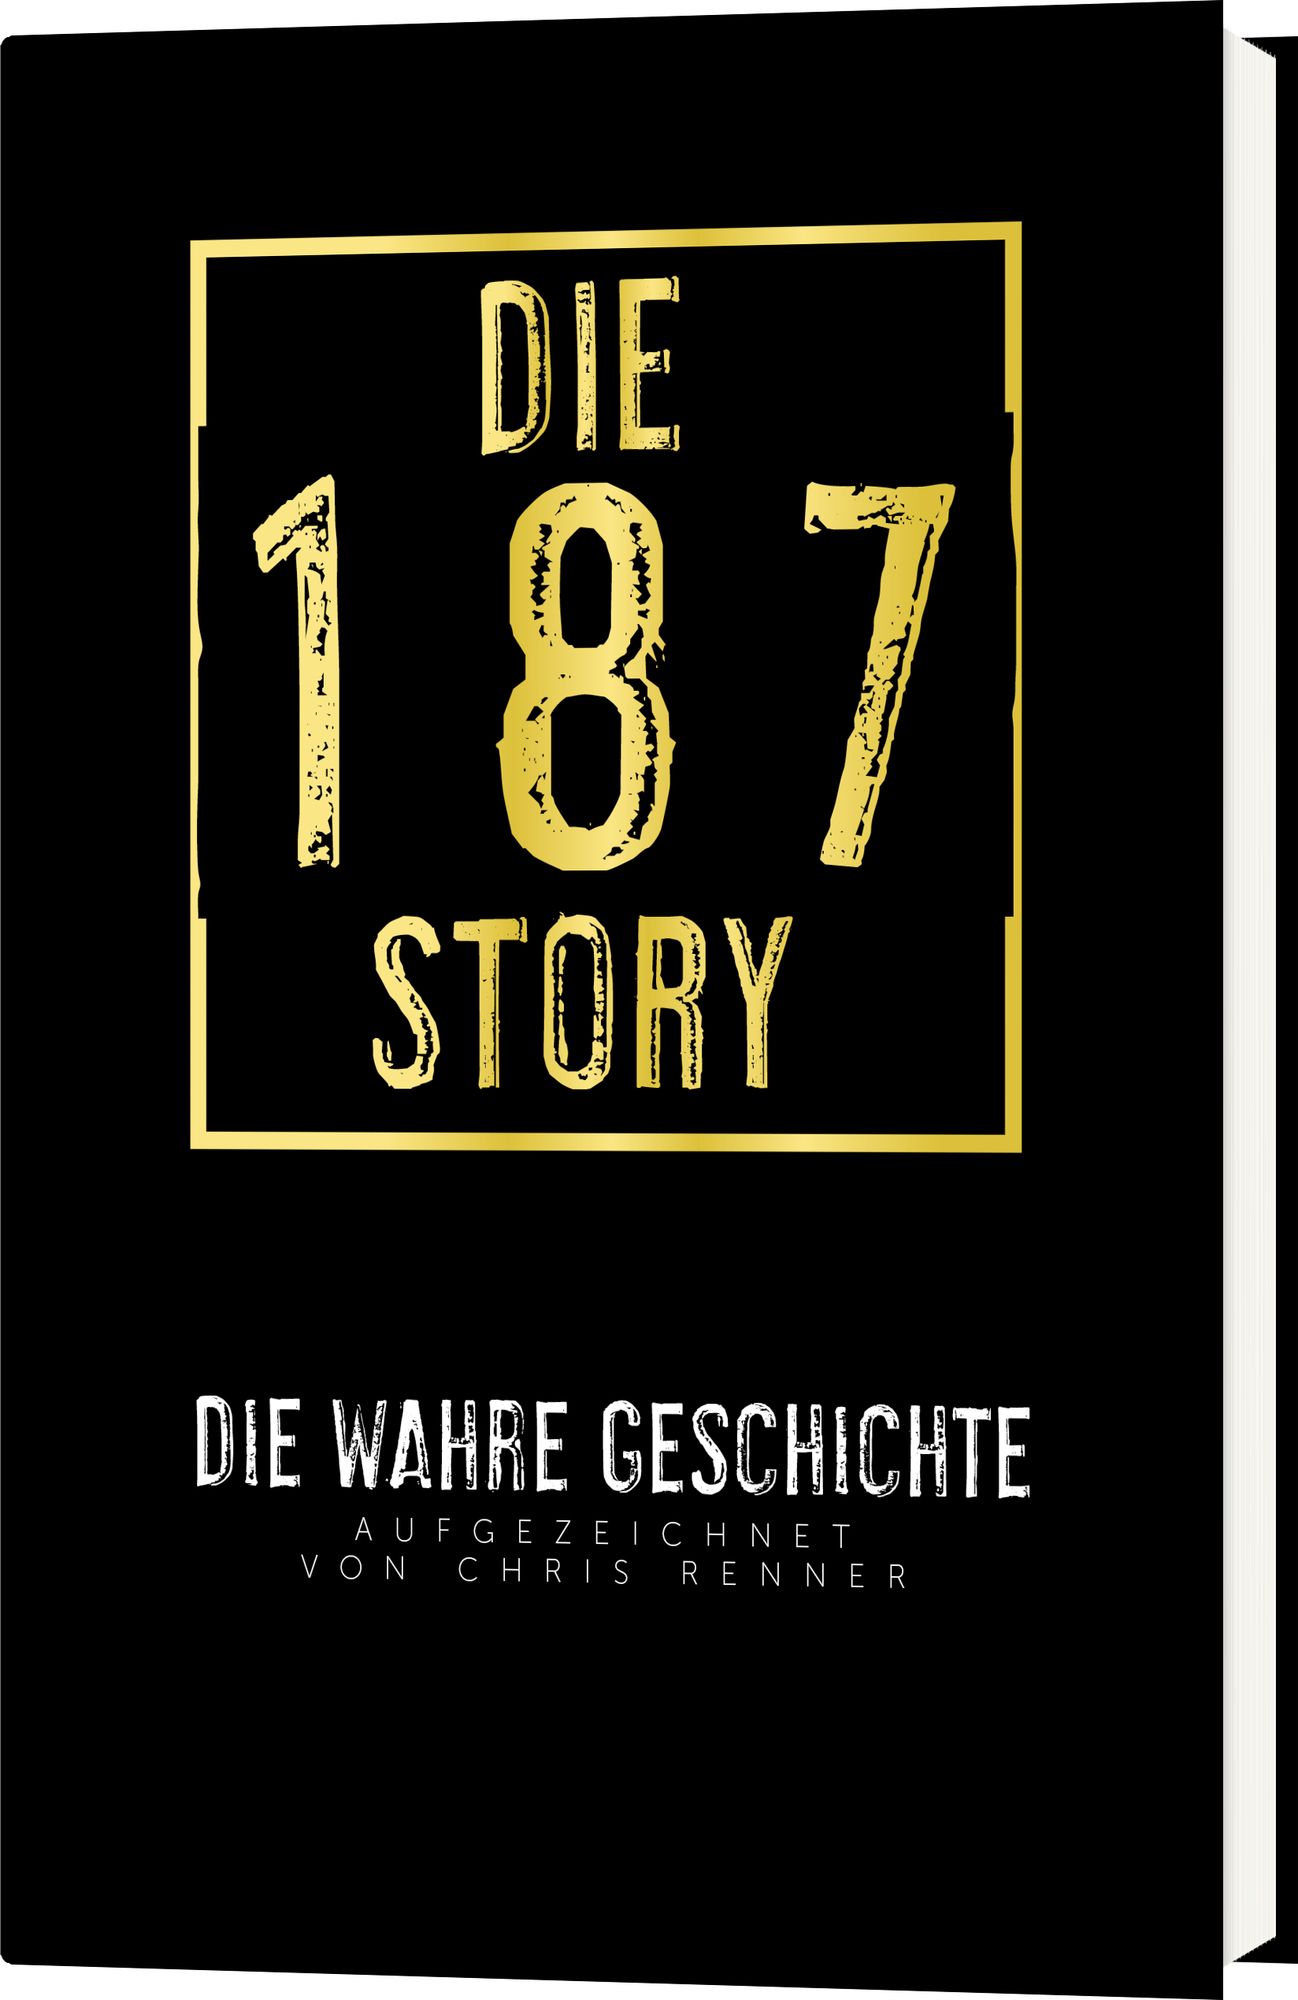 Die 187-Story' von 'Chris Renner' - Buch - '978-3-95760-010-3'